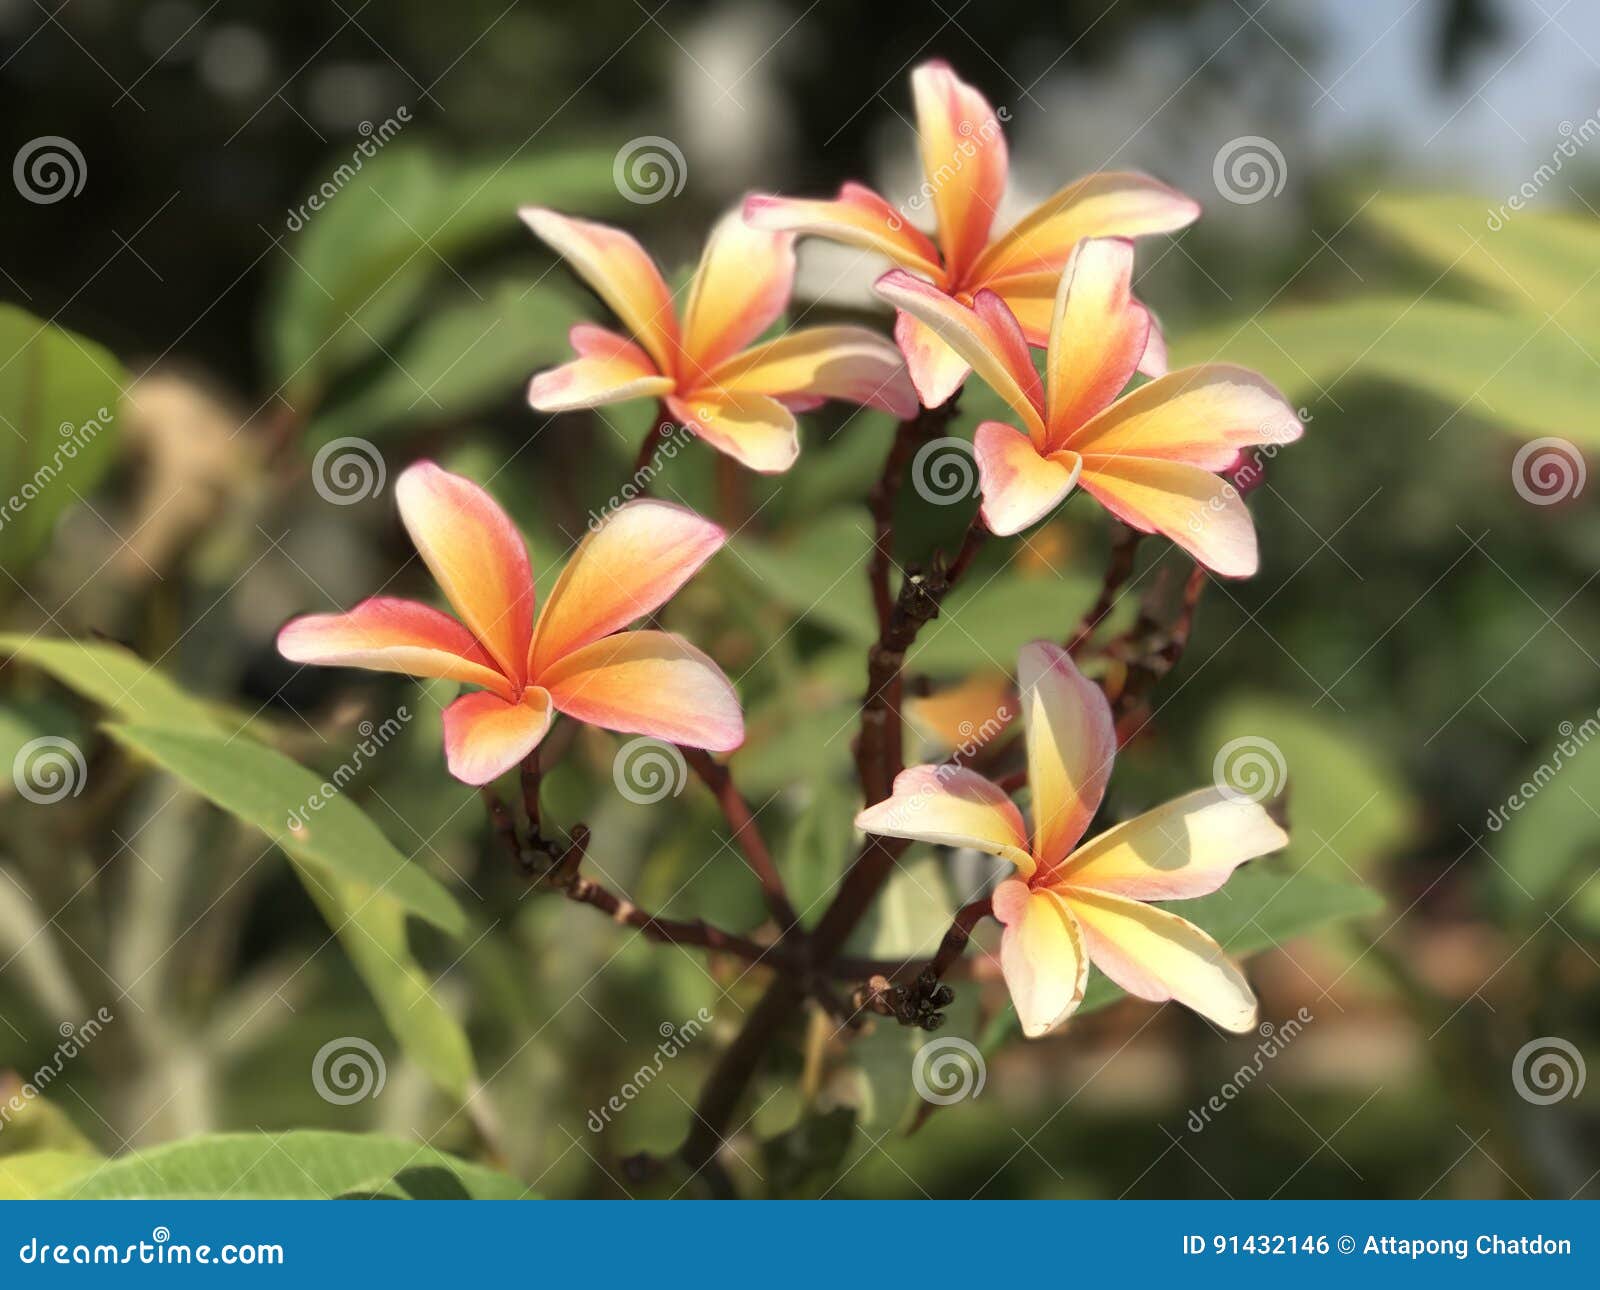 Plumerias stock photo. Image of closeup, macro, flora - 91432146